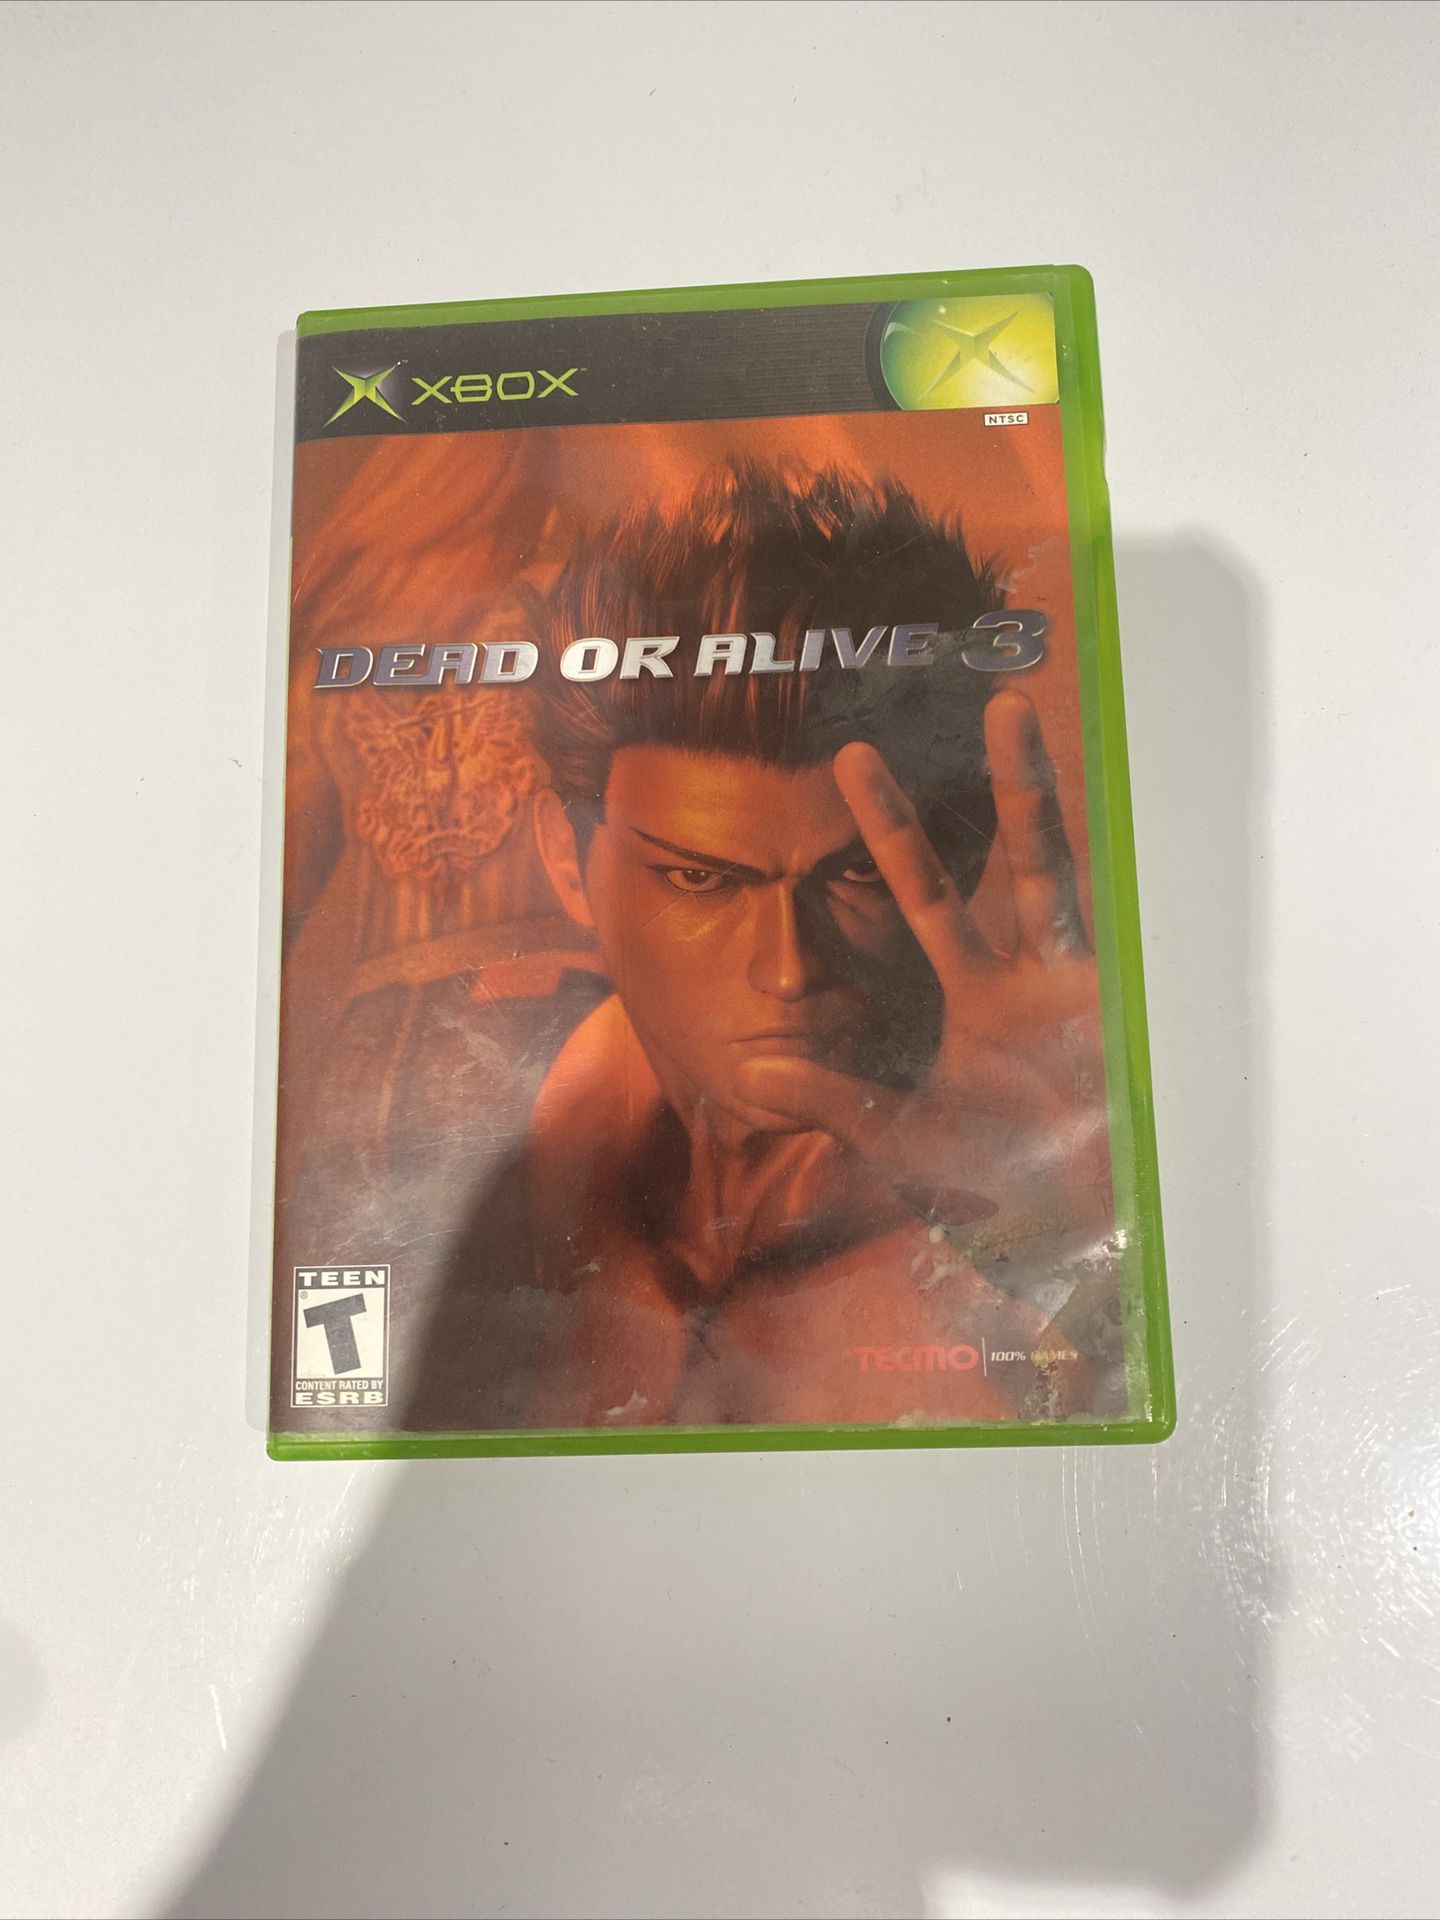  Dead or Alive 3 (Microsoft Xbox, 2001).   